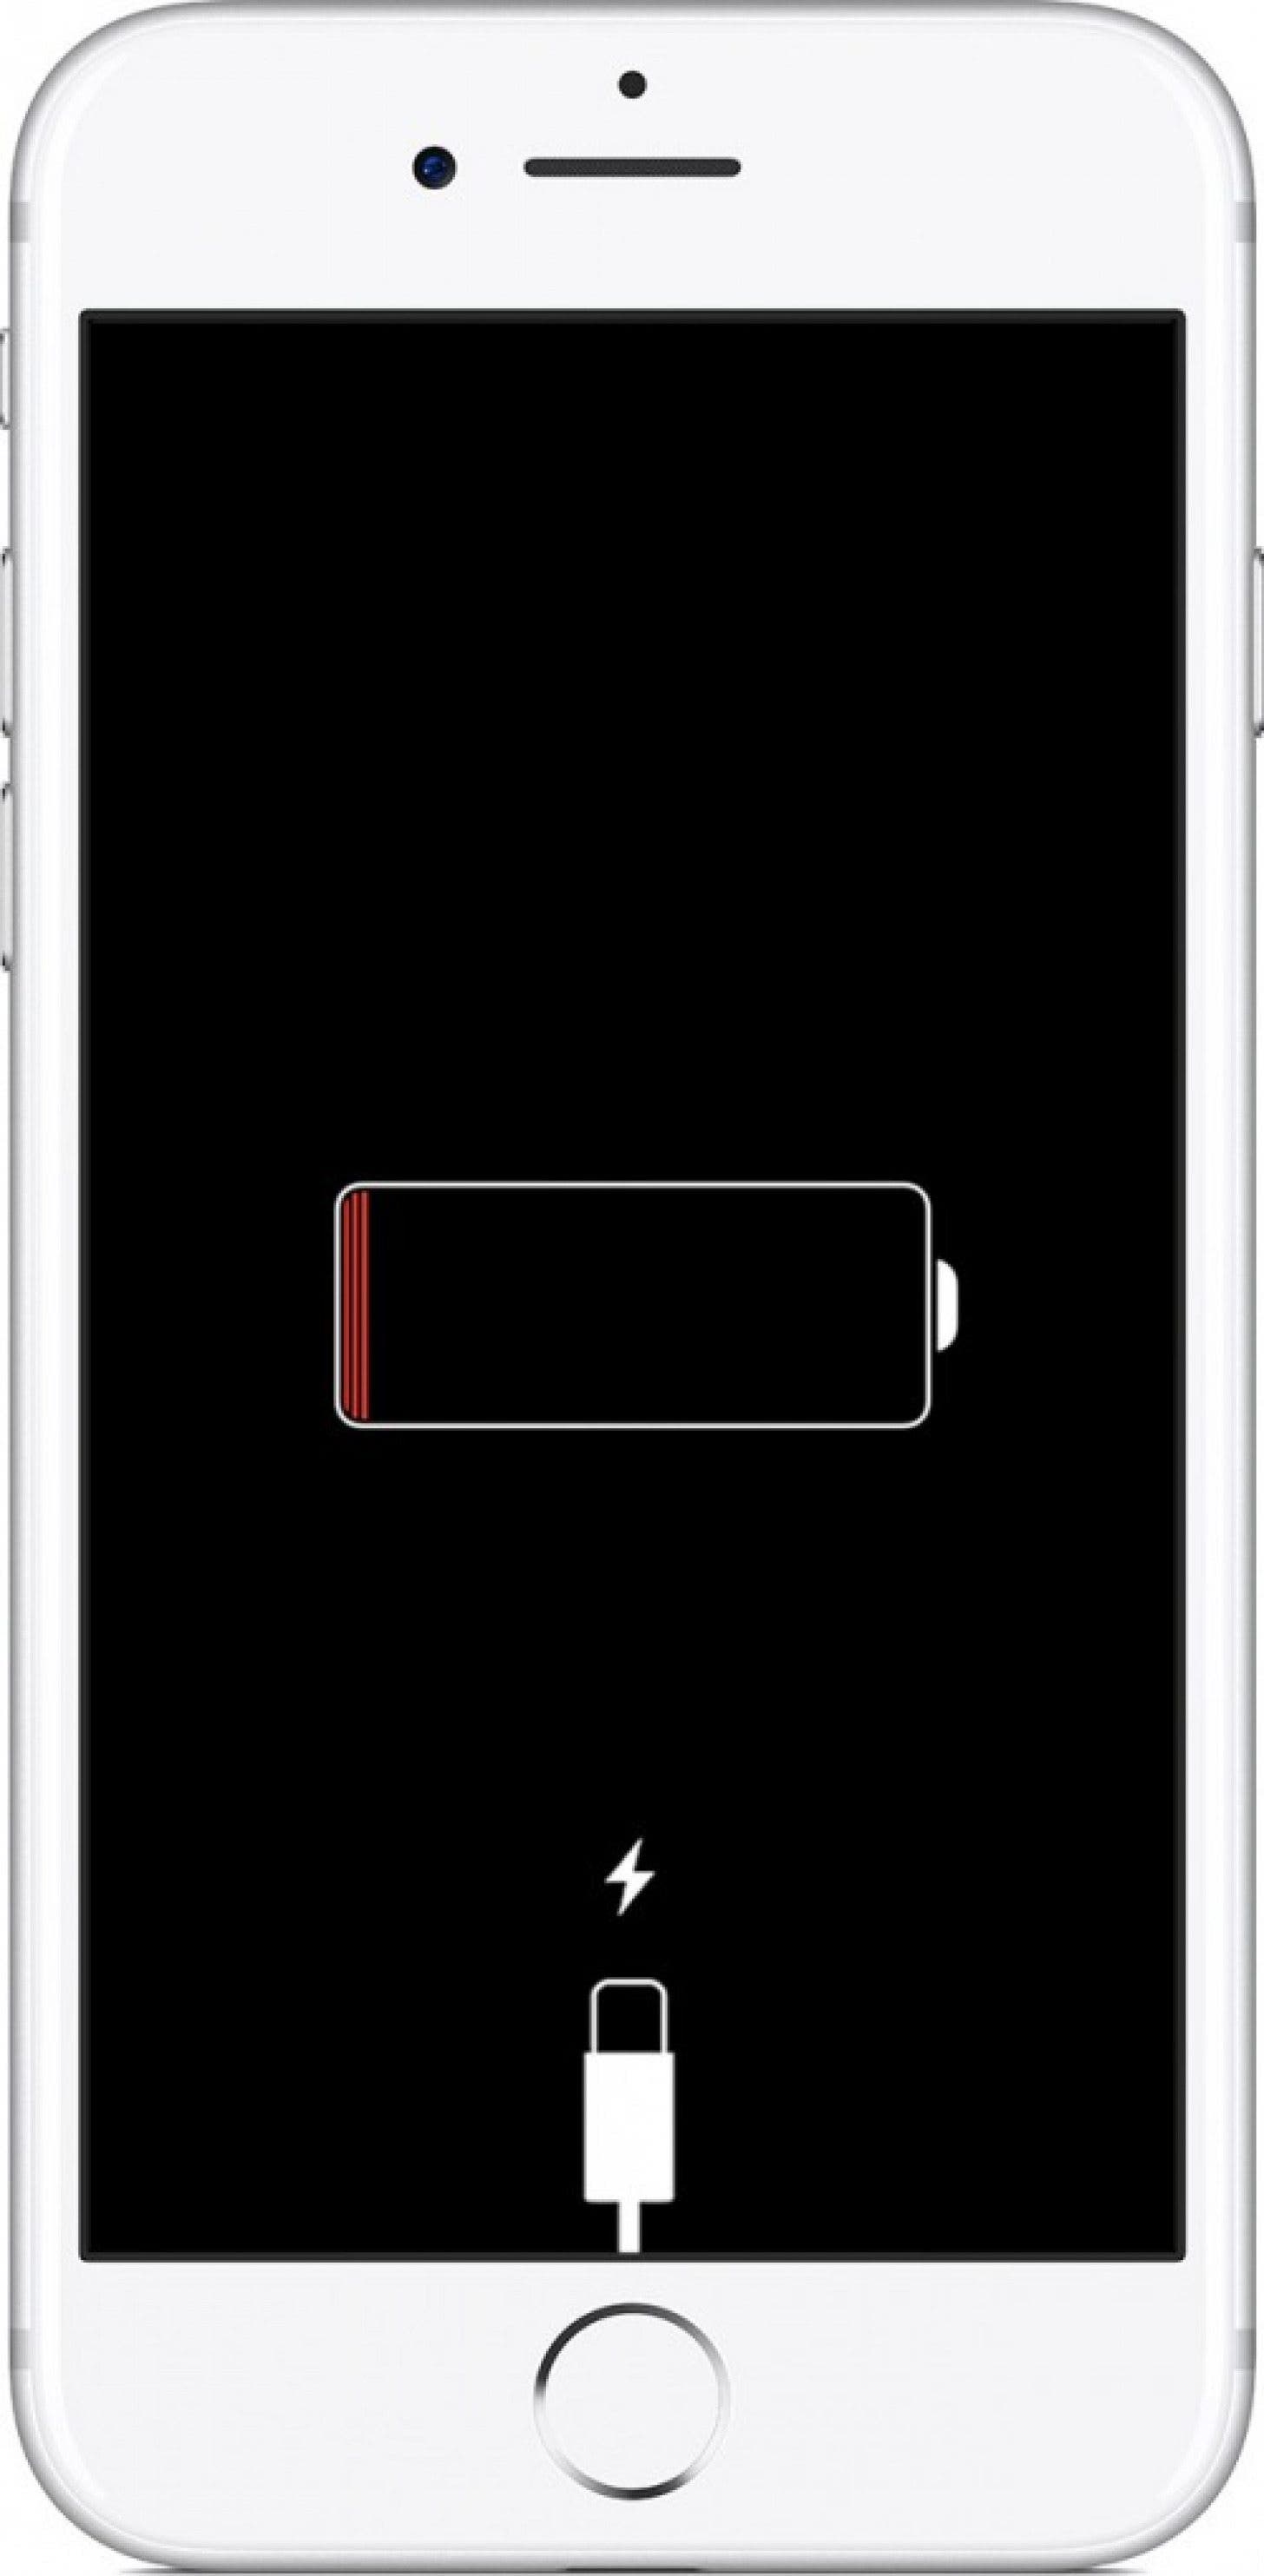 Éliminez une batterie déchargée en branchant votre téléphone pour voir s'il se recharge ;  vous pouvez également essayer un autre chargeur au cas où votre chargeur ou câble principal serait cassé.